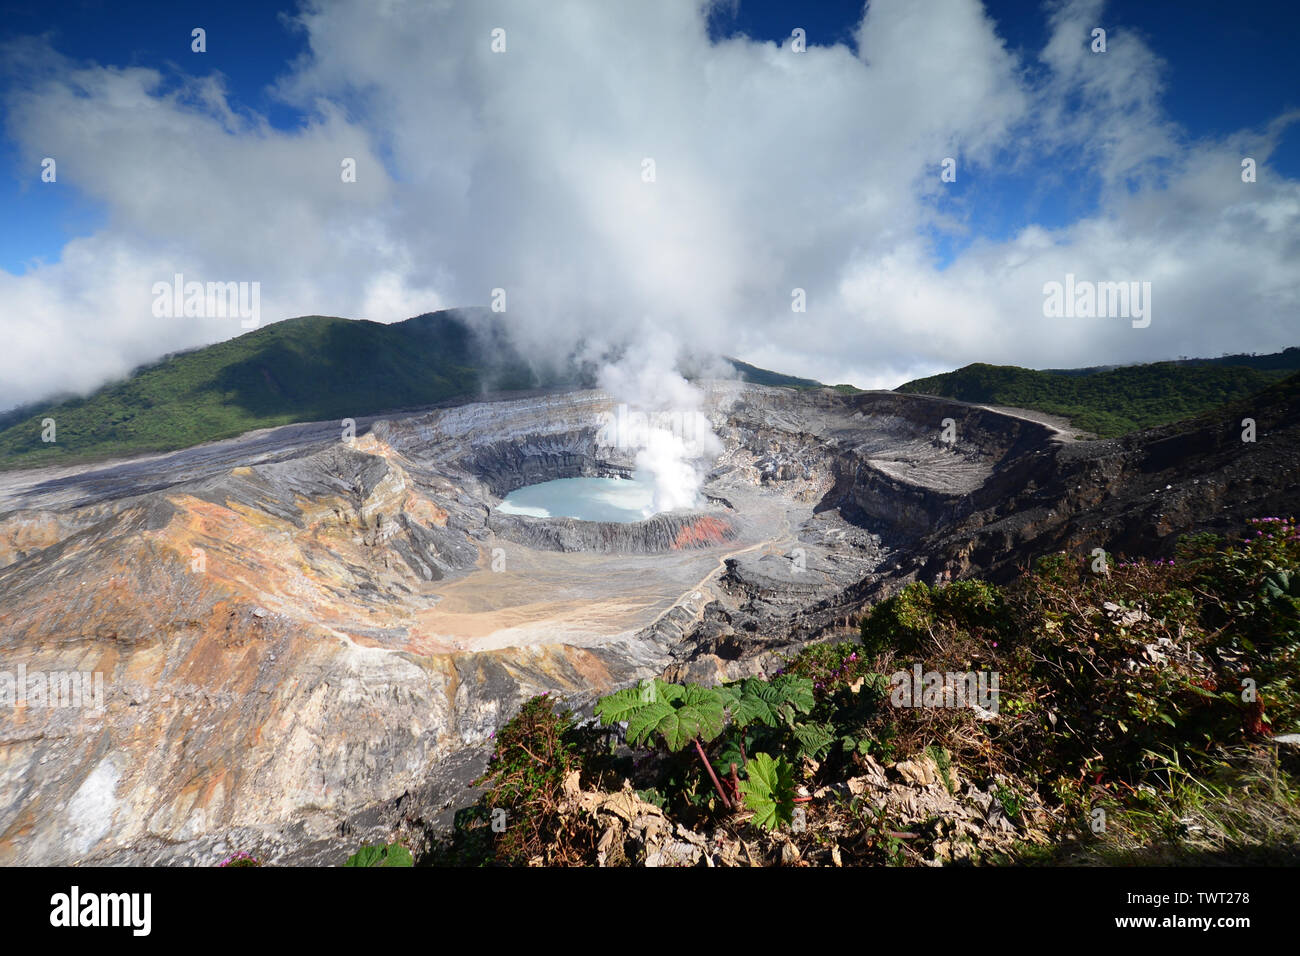 Caldera con il cratere del lago ed il vapore in aumento. Vulcano Poas, nel Parco Nazionale del Vulcano Poas, Costa Rica Foto Stock